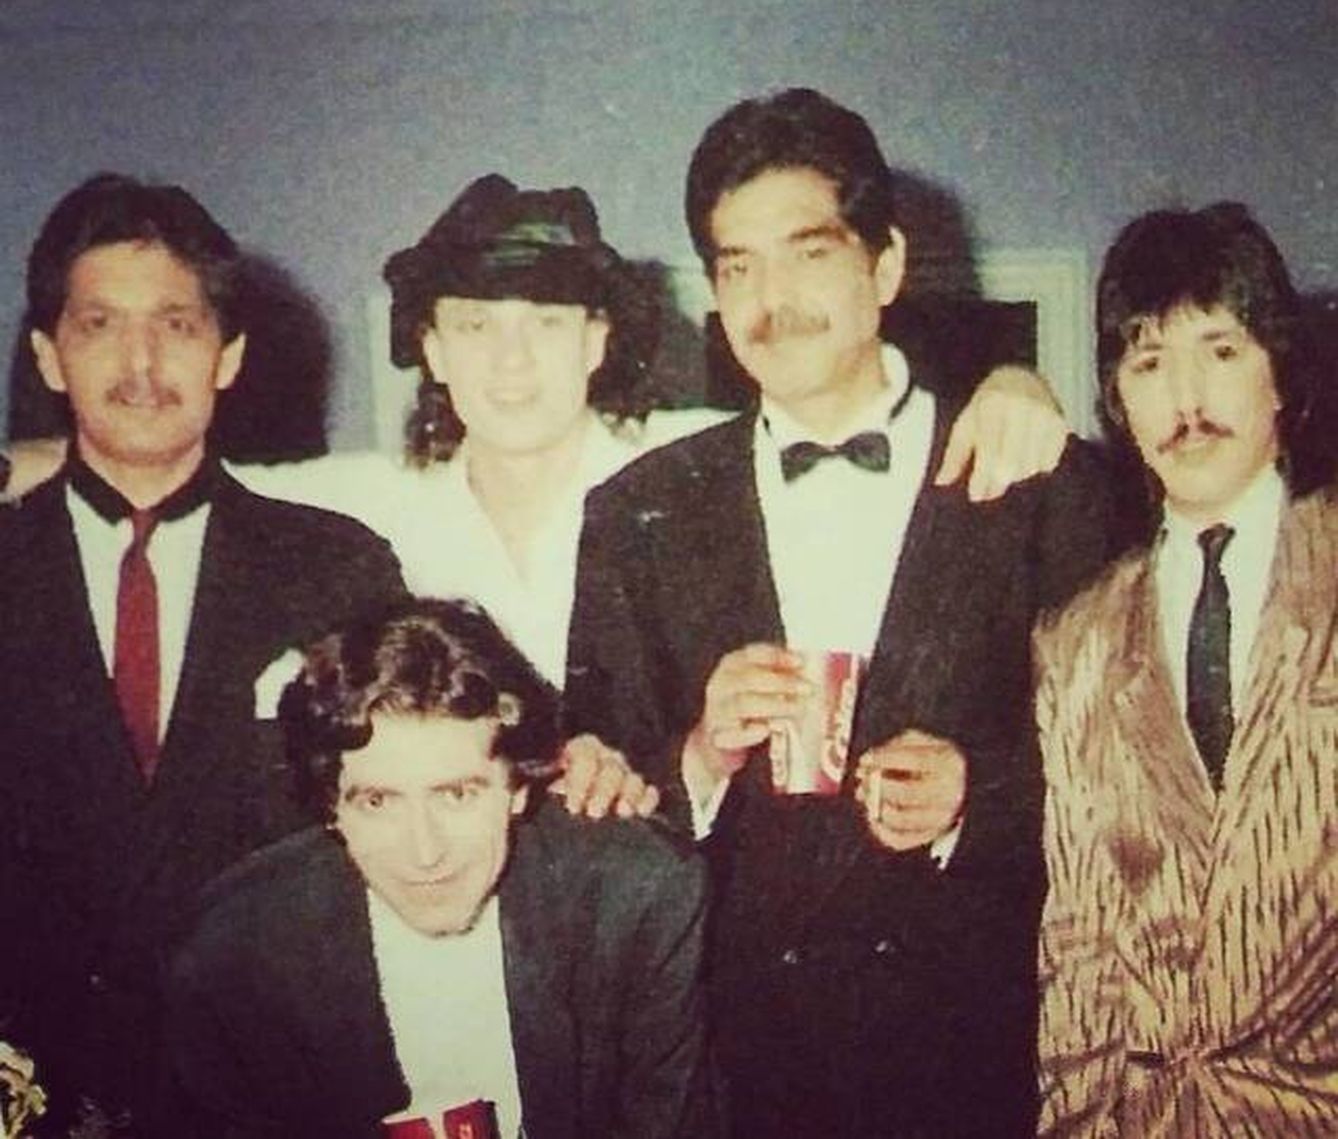 Los Chichos con Joaquín Sabina en 1989 